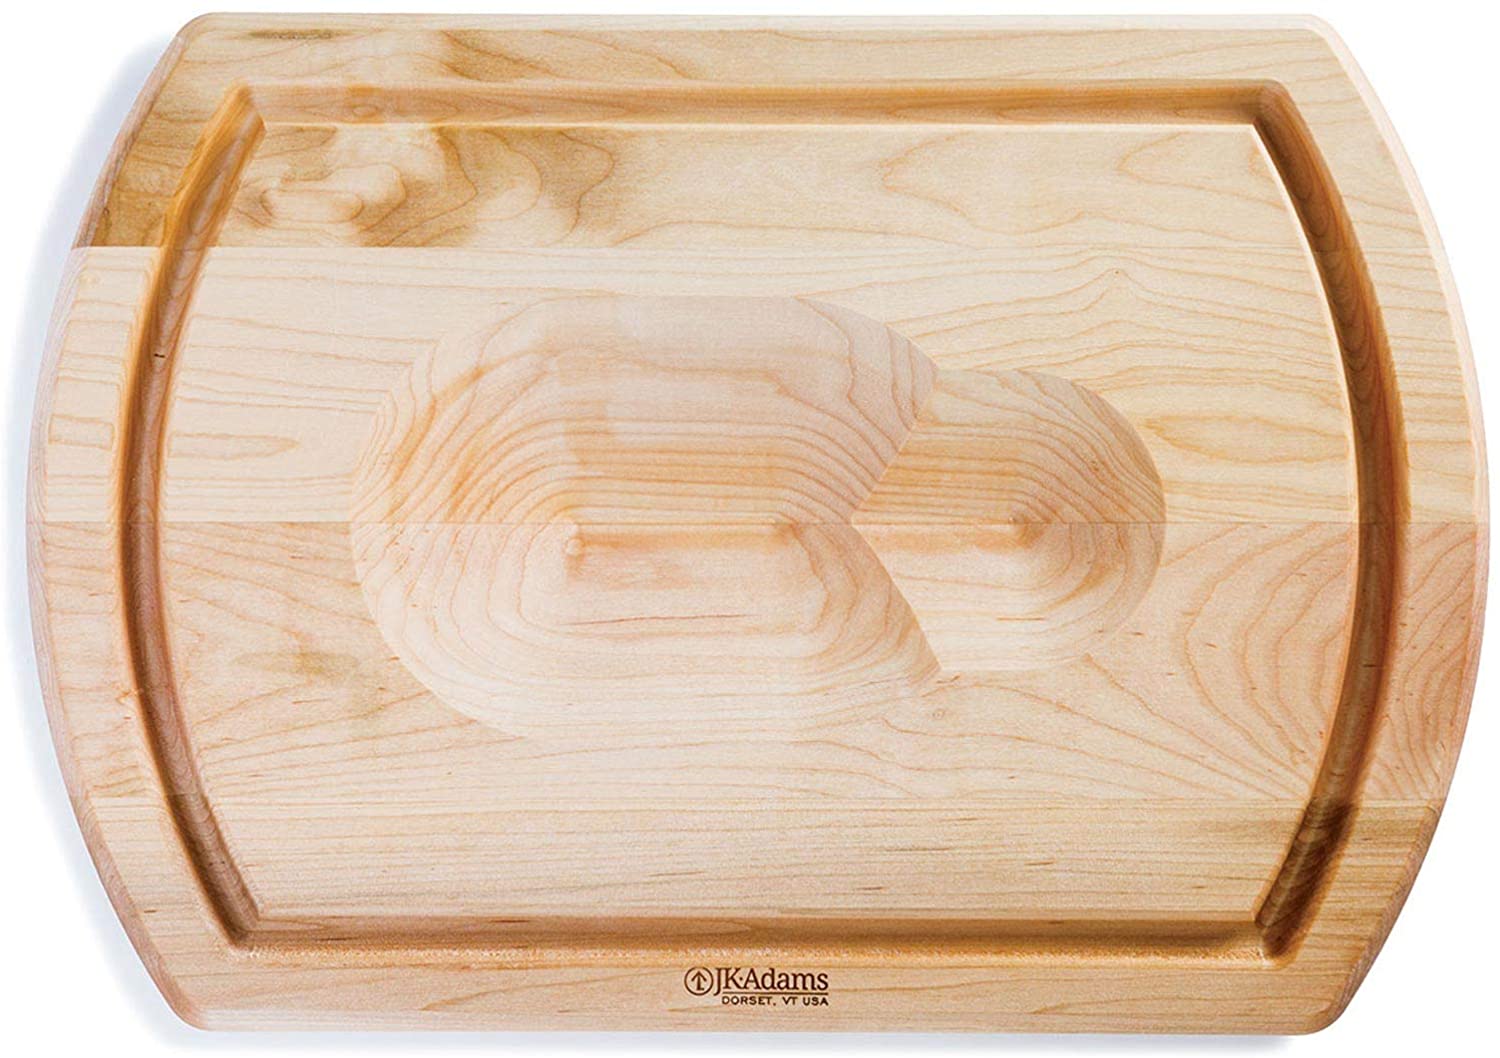 JK Adams Reversible Carving Board